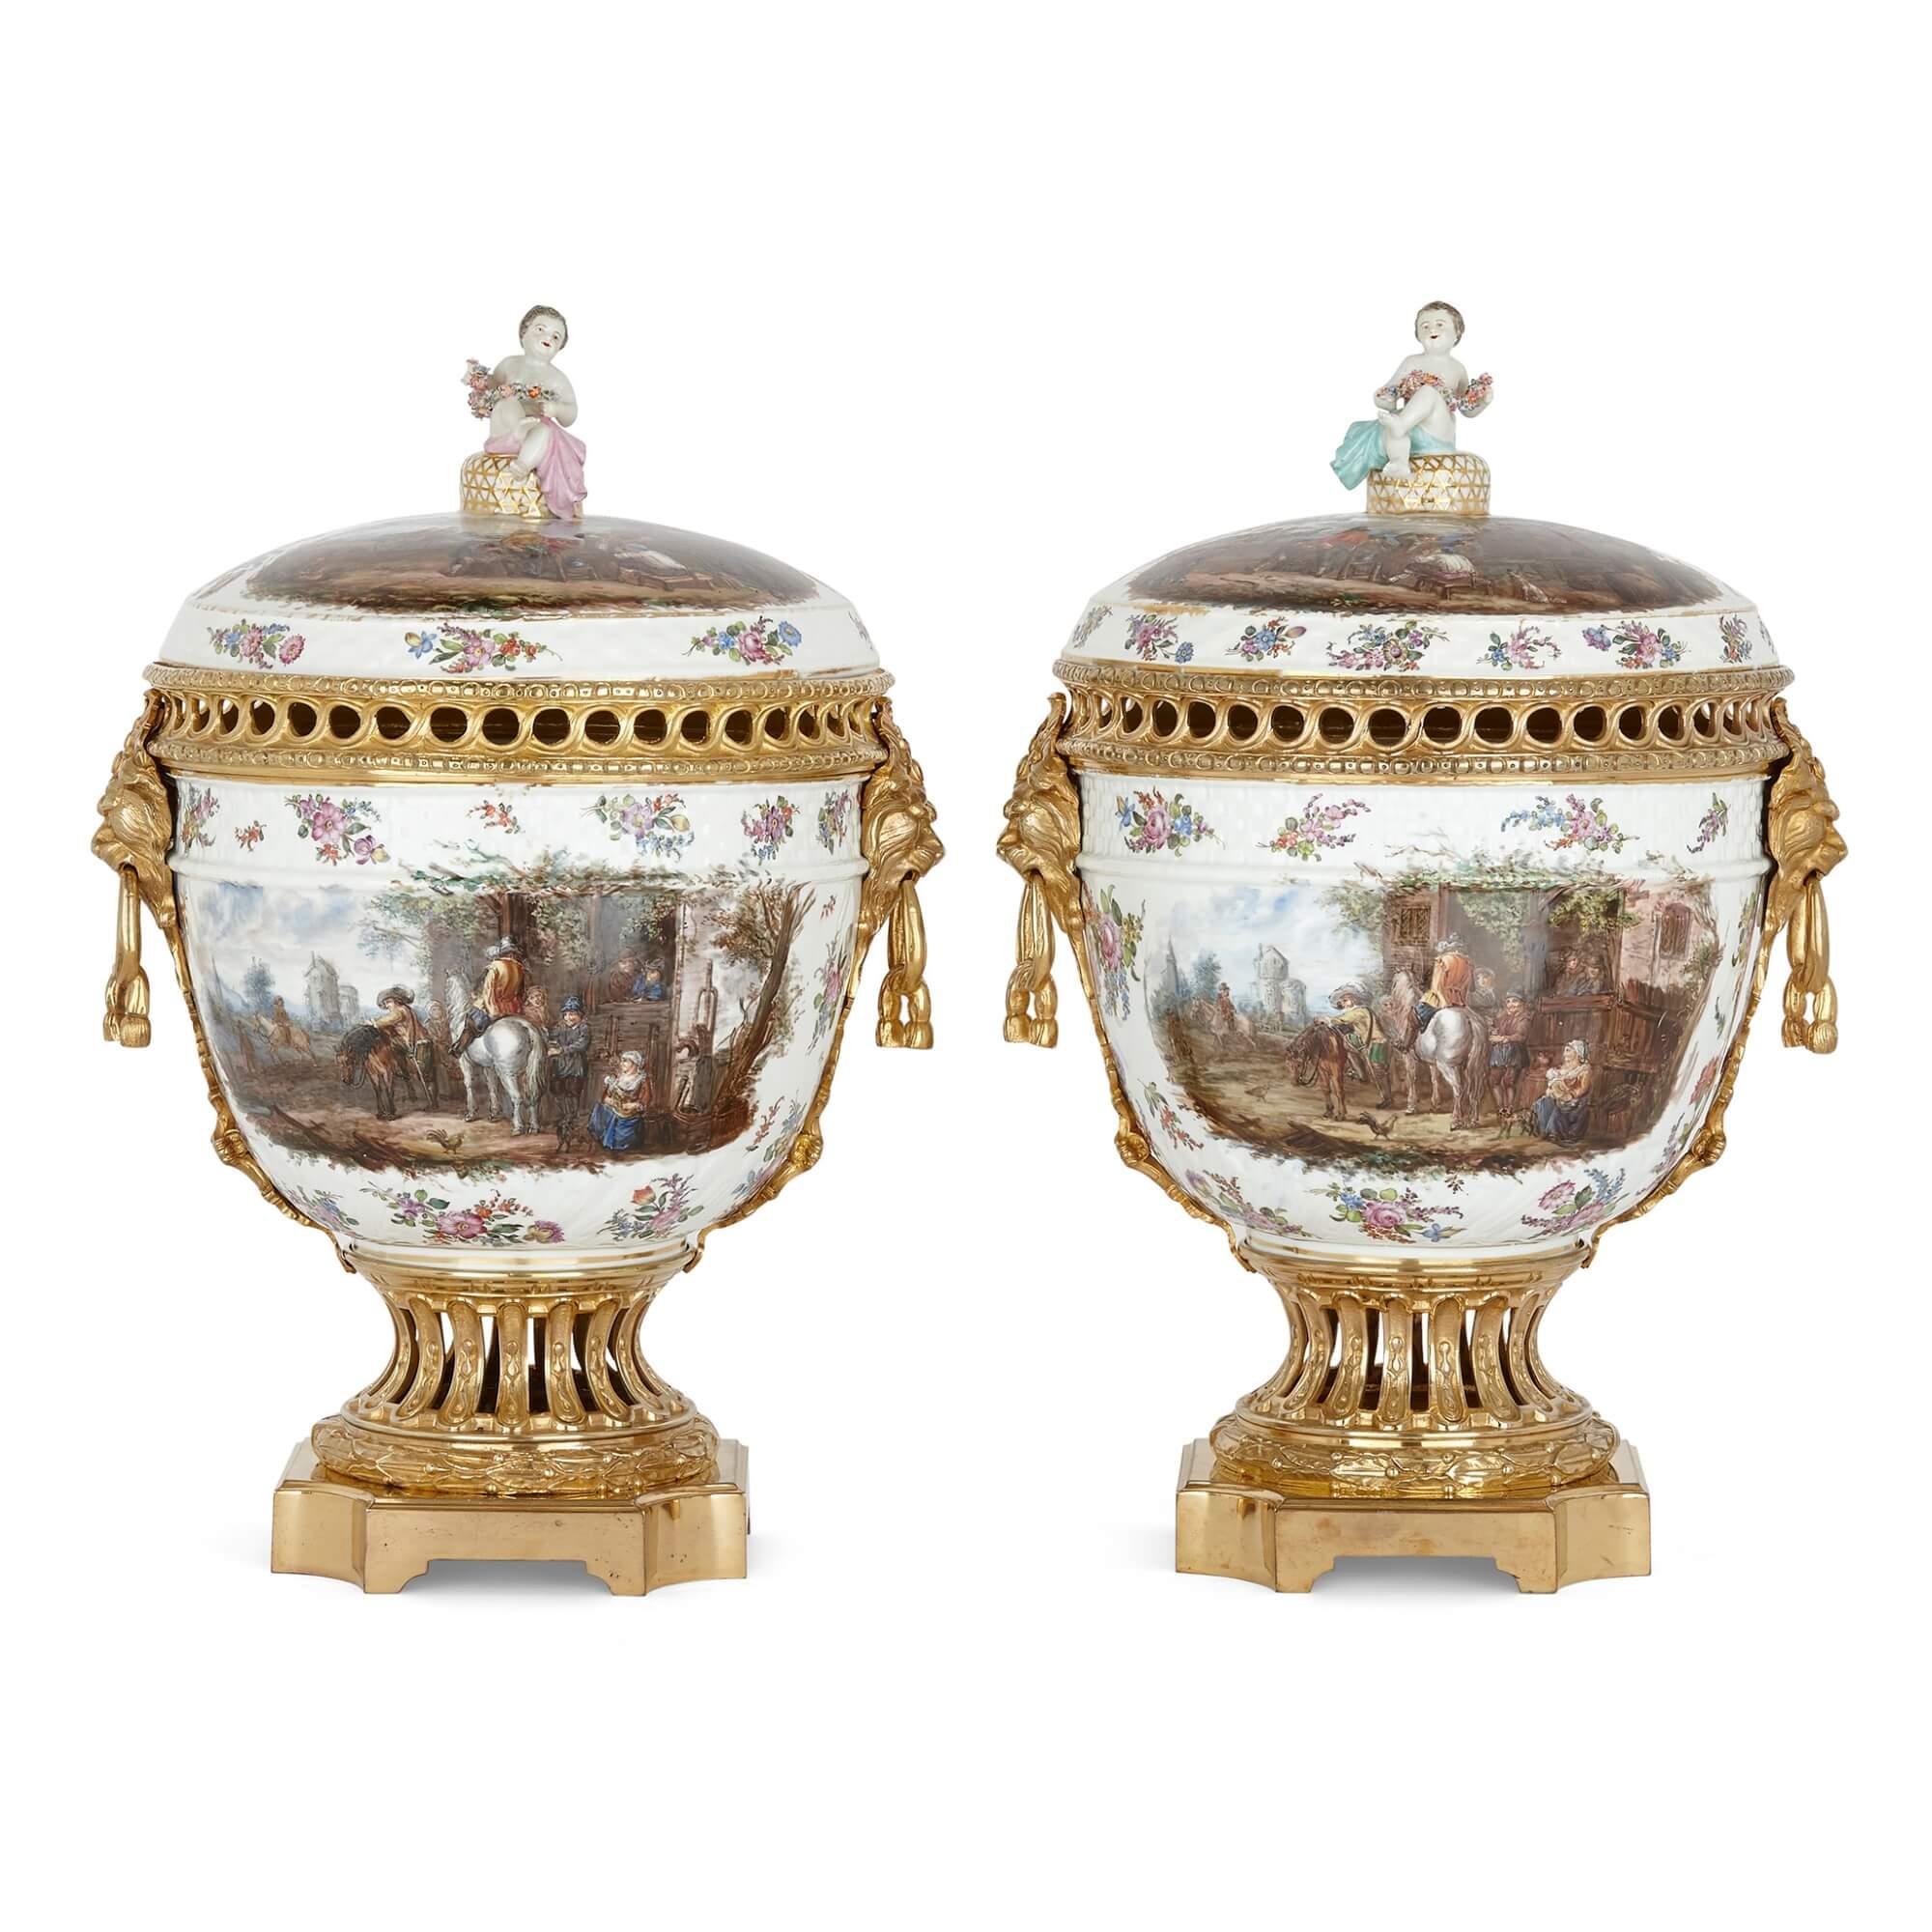 Paire de vases en porcelaine de Dresde et bronze doré.
Allemand, fin du XIXe siècle.
Mesures : hauteur 57cm, largeur 39cm, profondeur 33cm.

Cette paire de vases pot pourri en porcelaine de Dresde est ornée de montures en bronze doré. Les vases